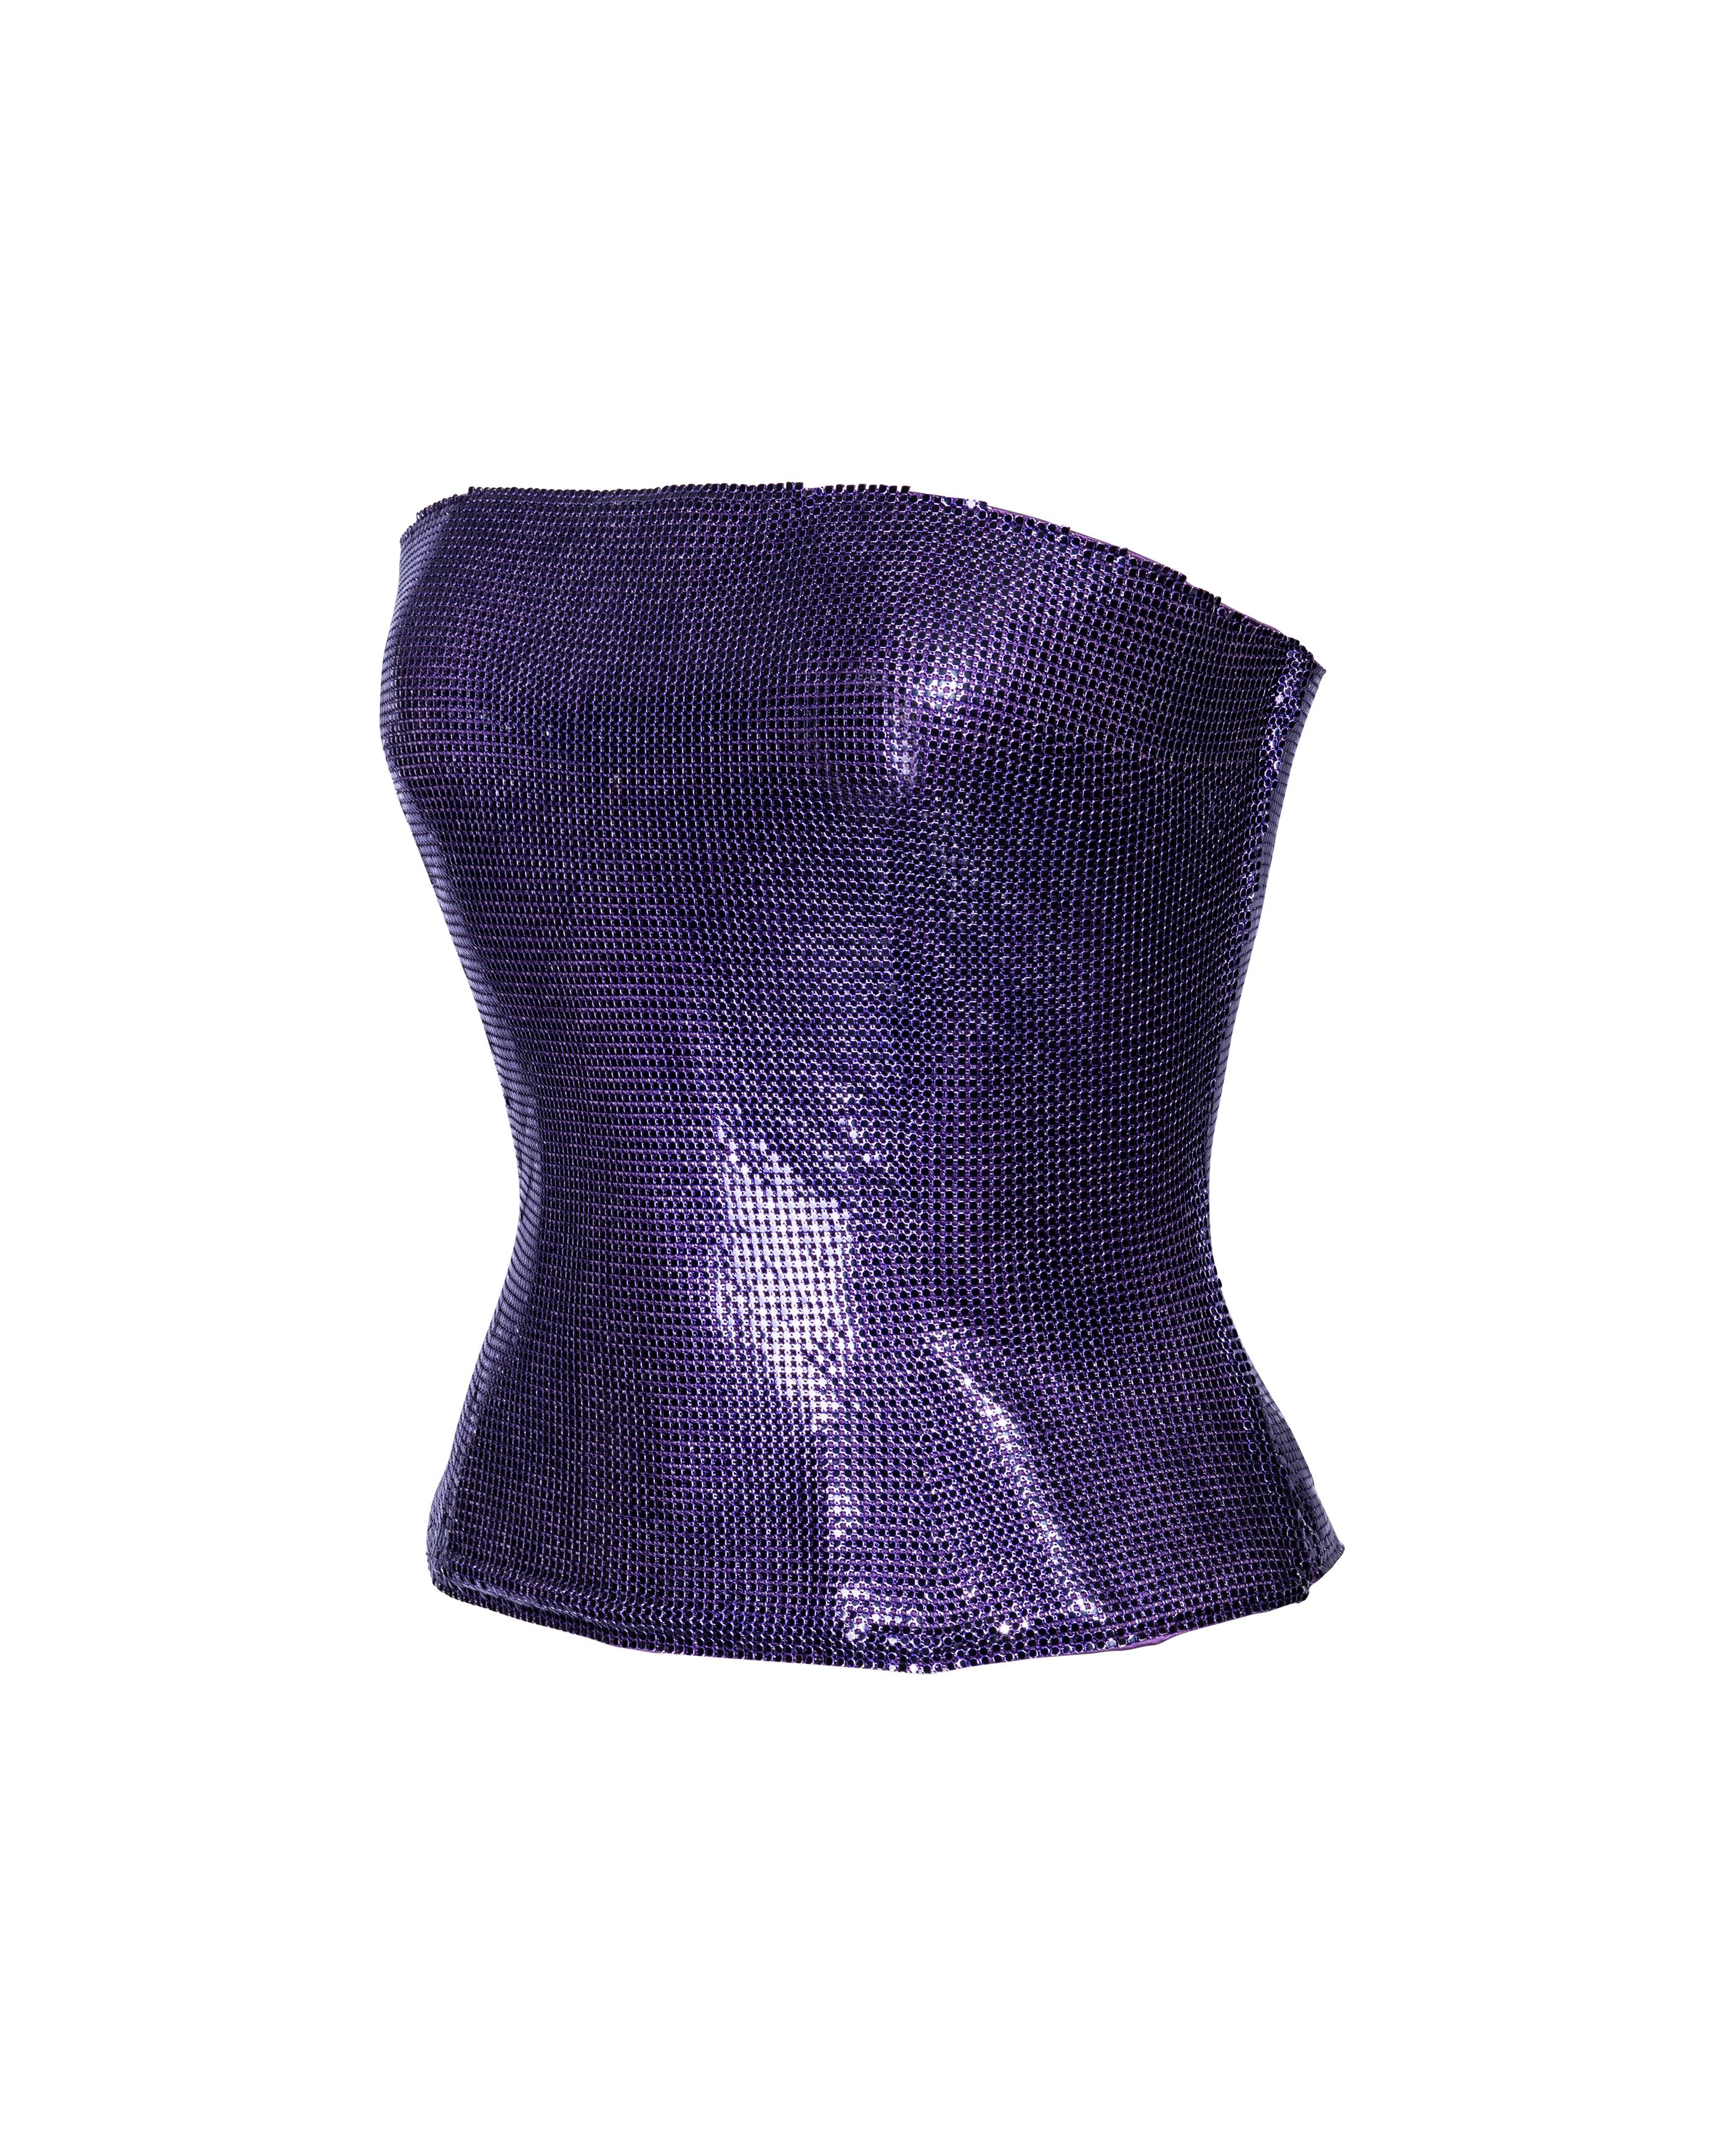 S/S 1998 Atelier Versace Haute Couture Top cotte de mailles violet sans bretelles Oroton Excellent état - En vente à North Hollywood, CA